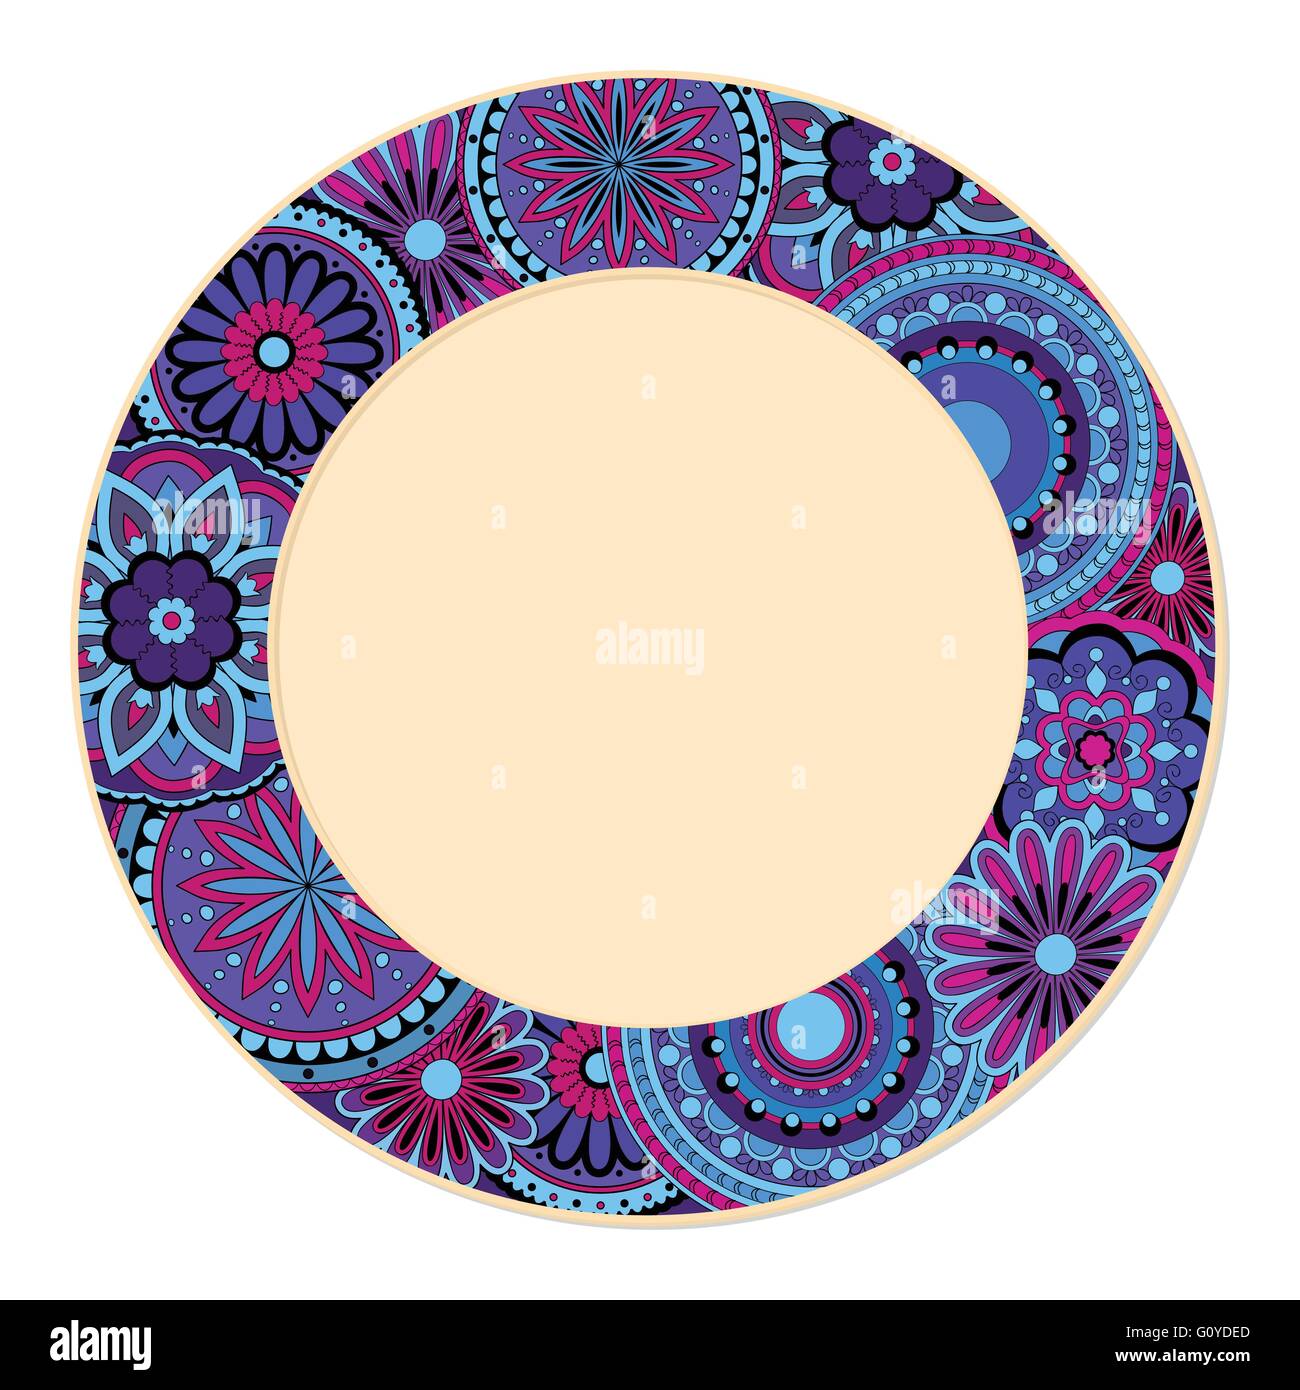 Disegnata a mano colorato decorato piattino in stile Boho con i mandala. isolato sul bianco. template per la decorazione dei piatti, piastre Illustrazione Vettoriale